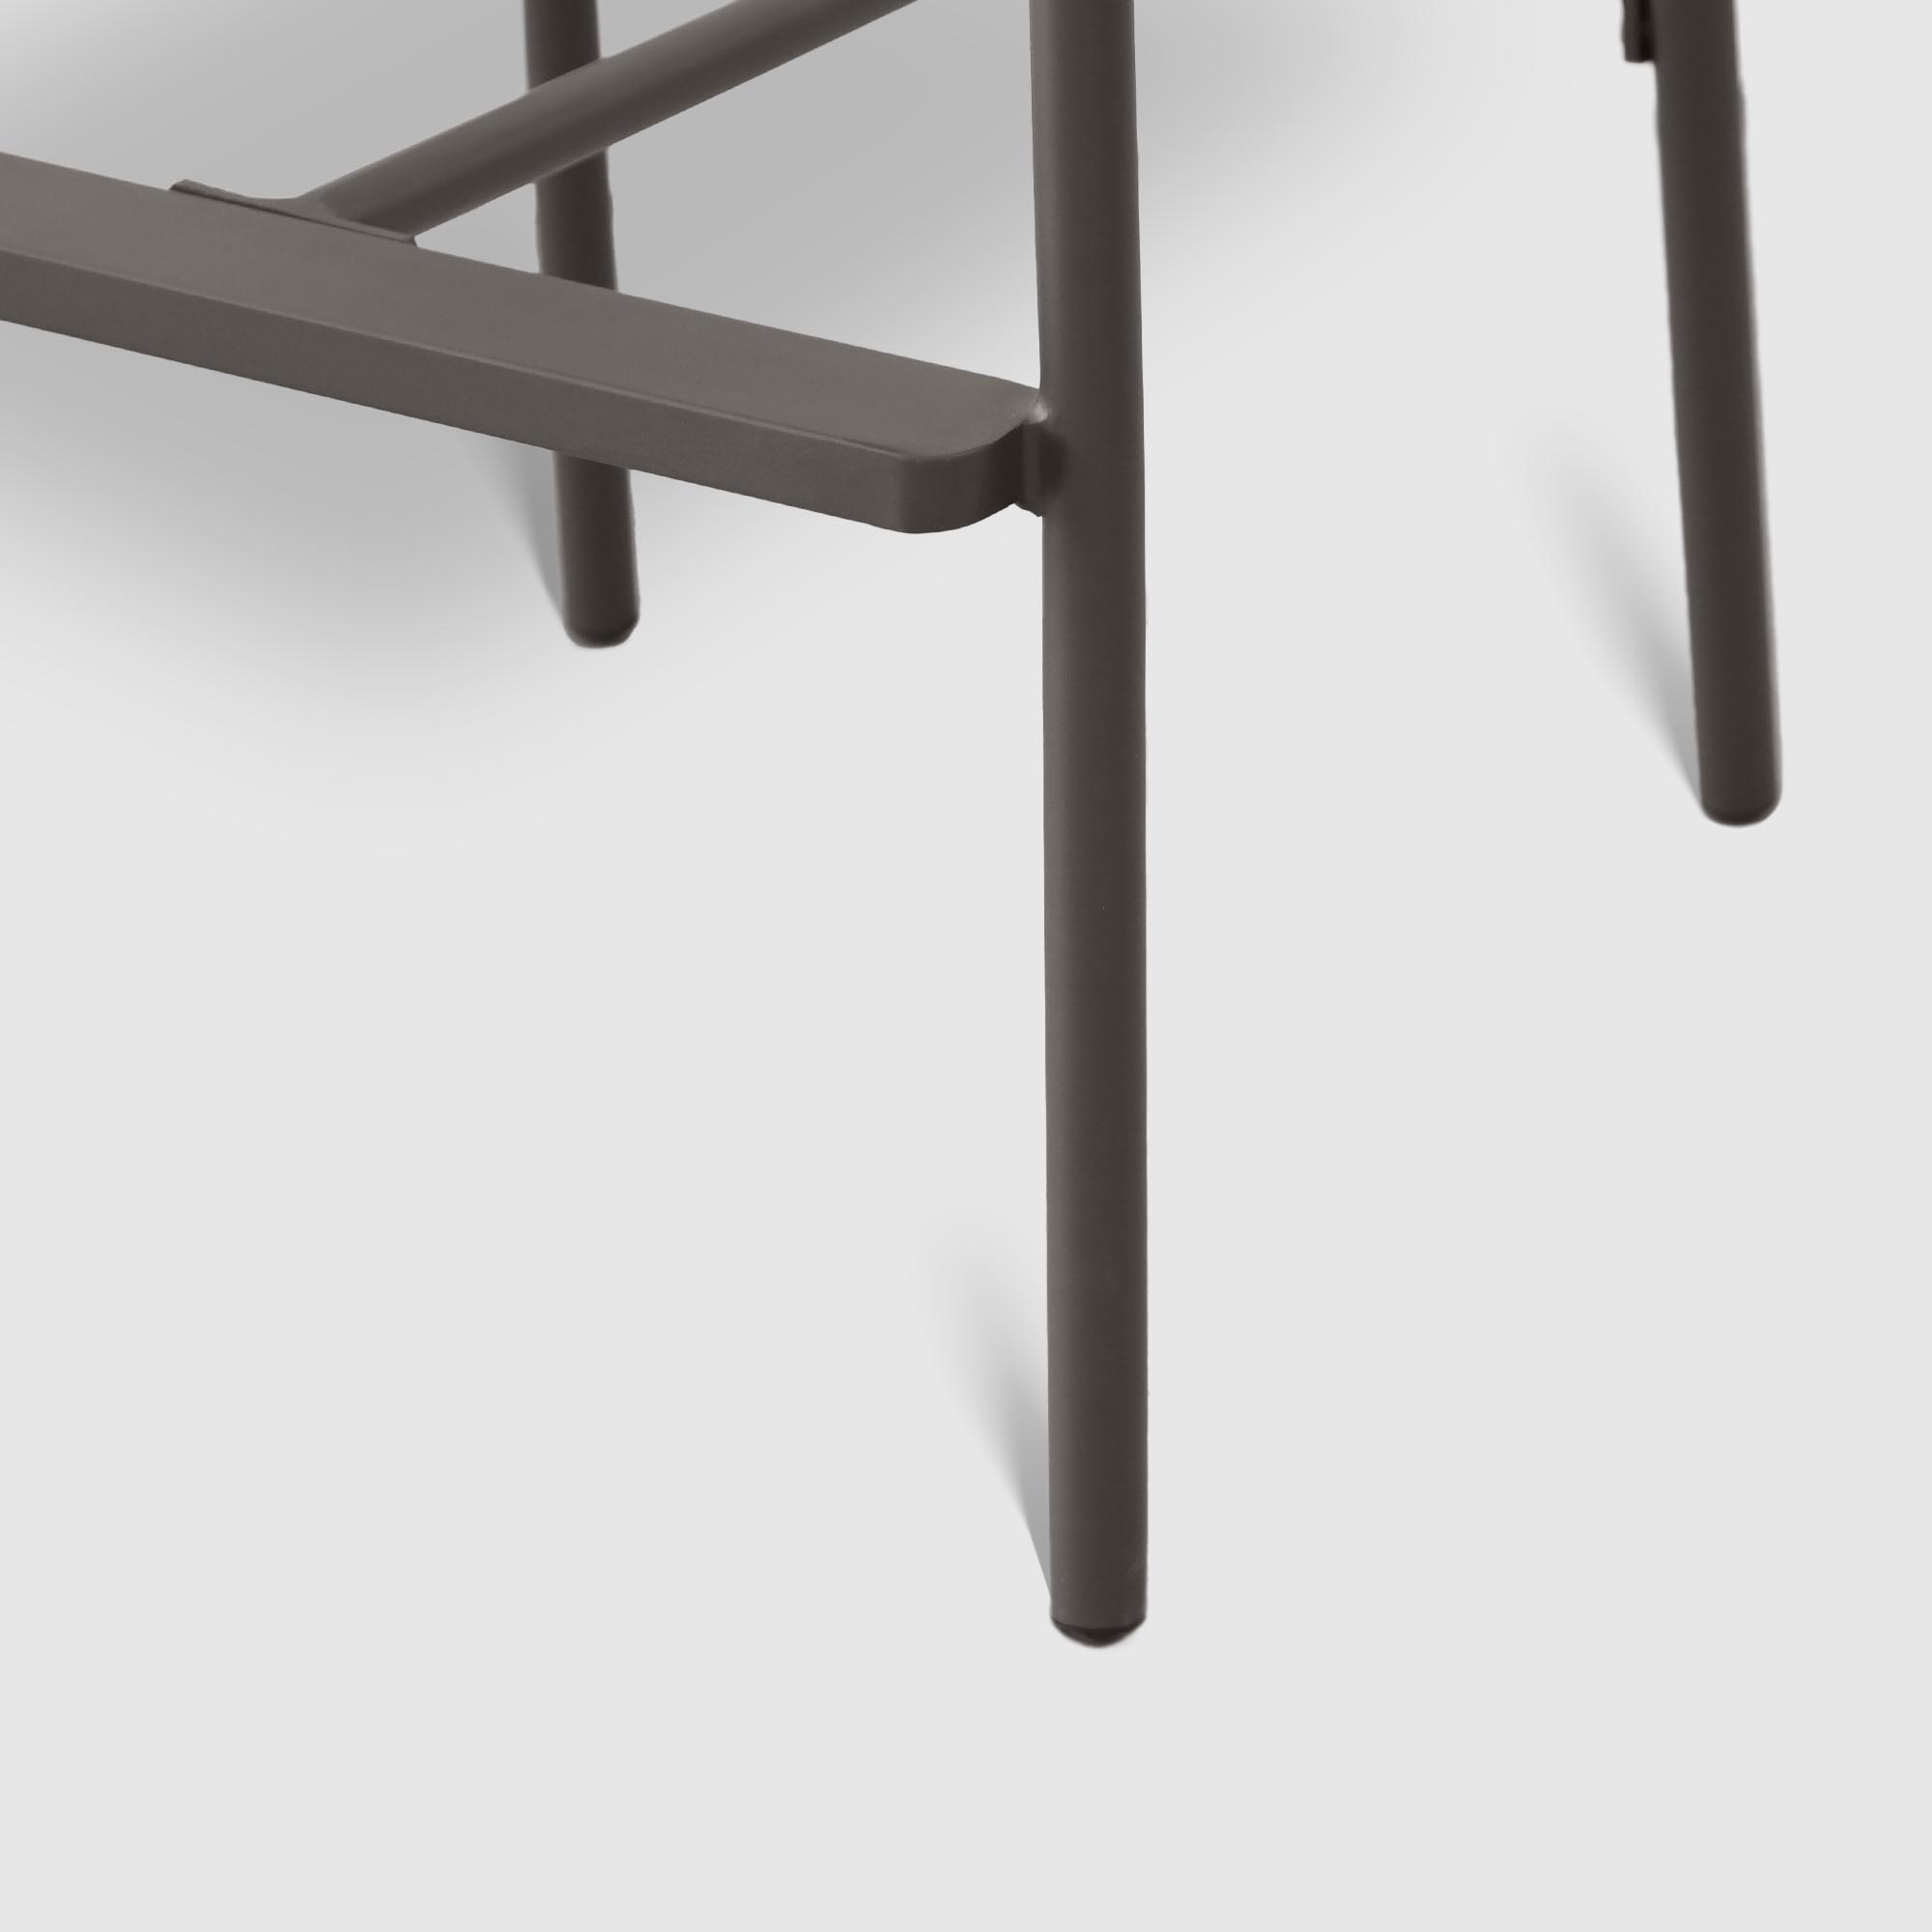 Барное кресло Drigani Drop антрацит с тёмно-коричневым 57х56х104 см, цвет тёмно-коричневый - фото 4